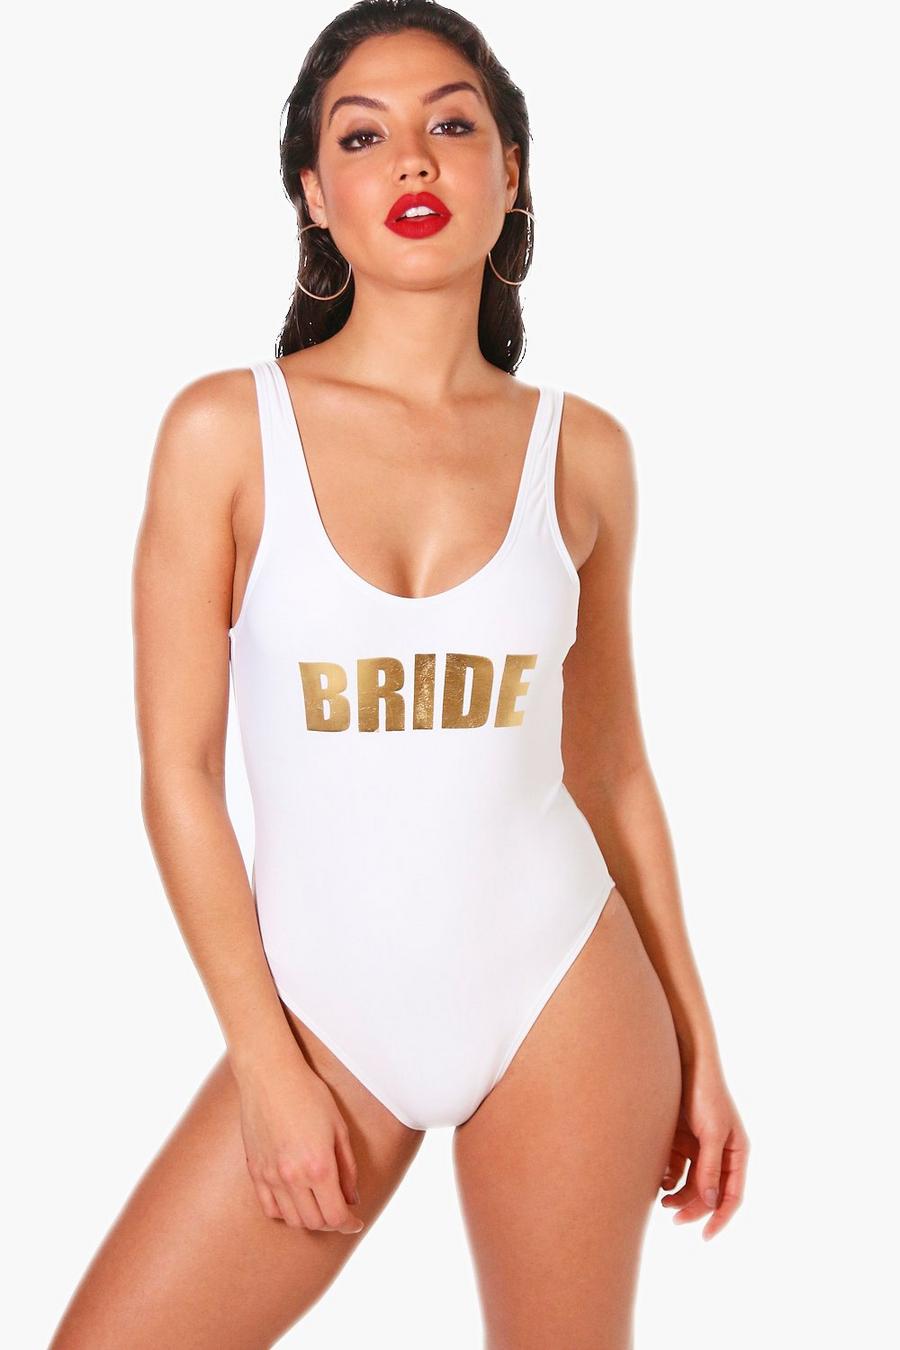 Bañador con escote redondeado y eslogan “Bride” image number 1